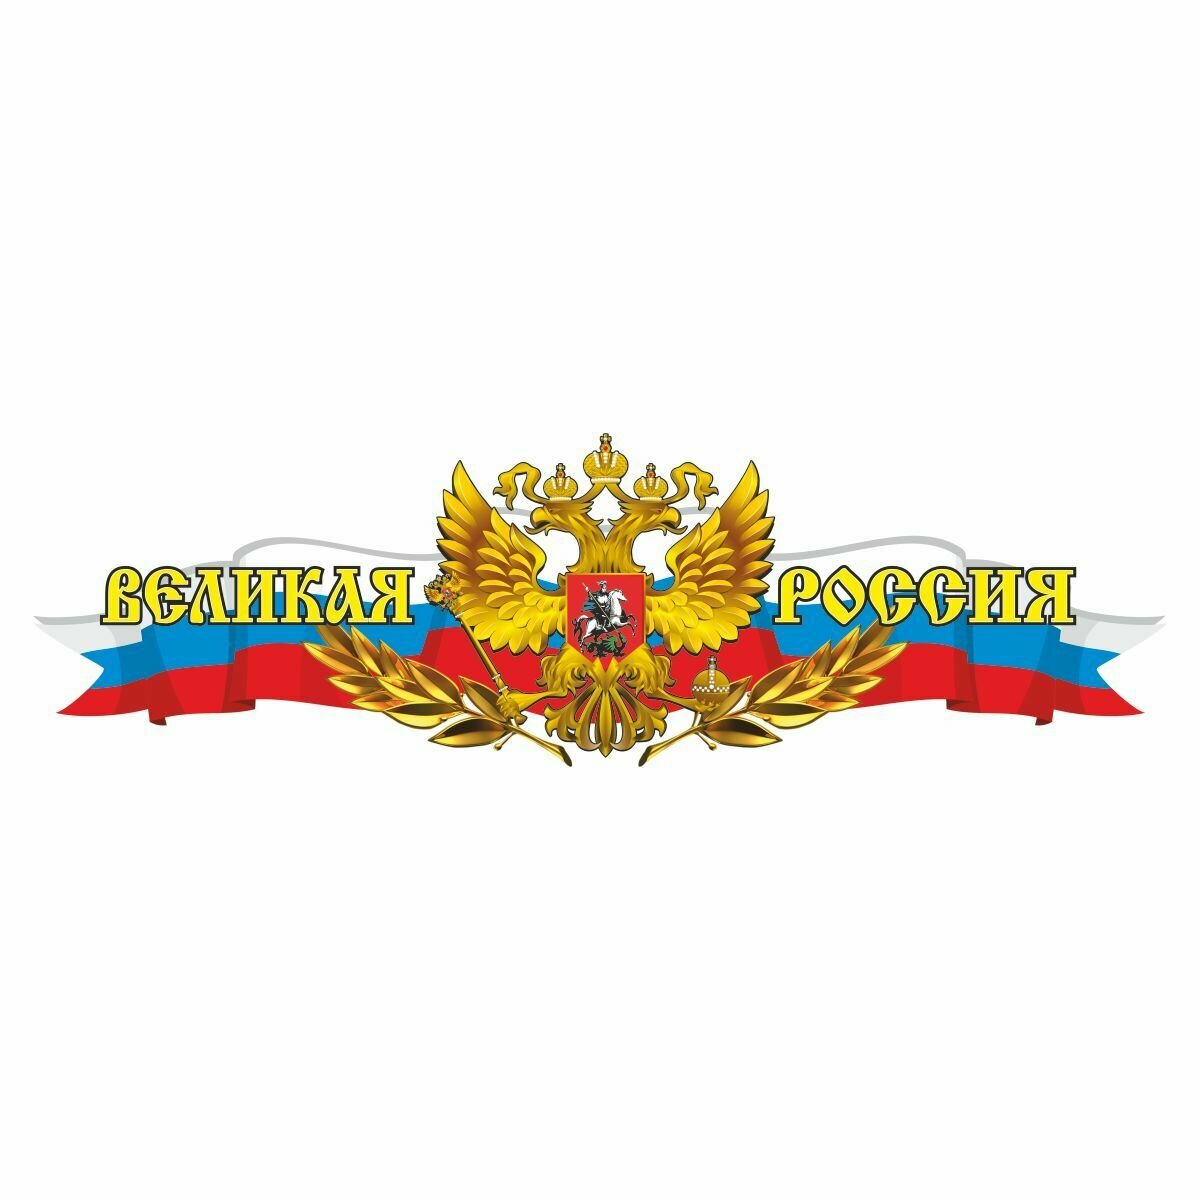 Российская лента с гербом, 500х150мм "Великая Россия", (центральная), Арт рэйсинг